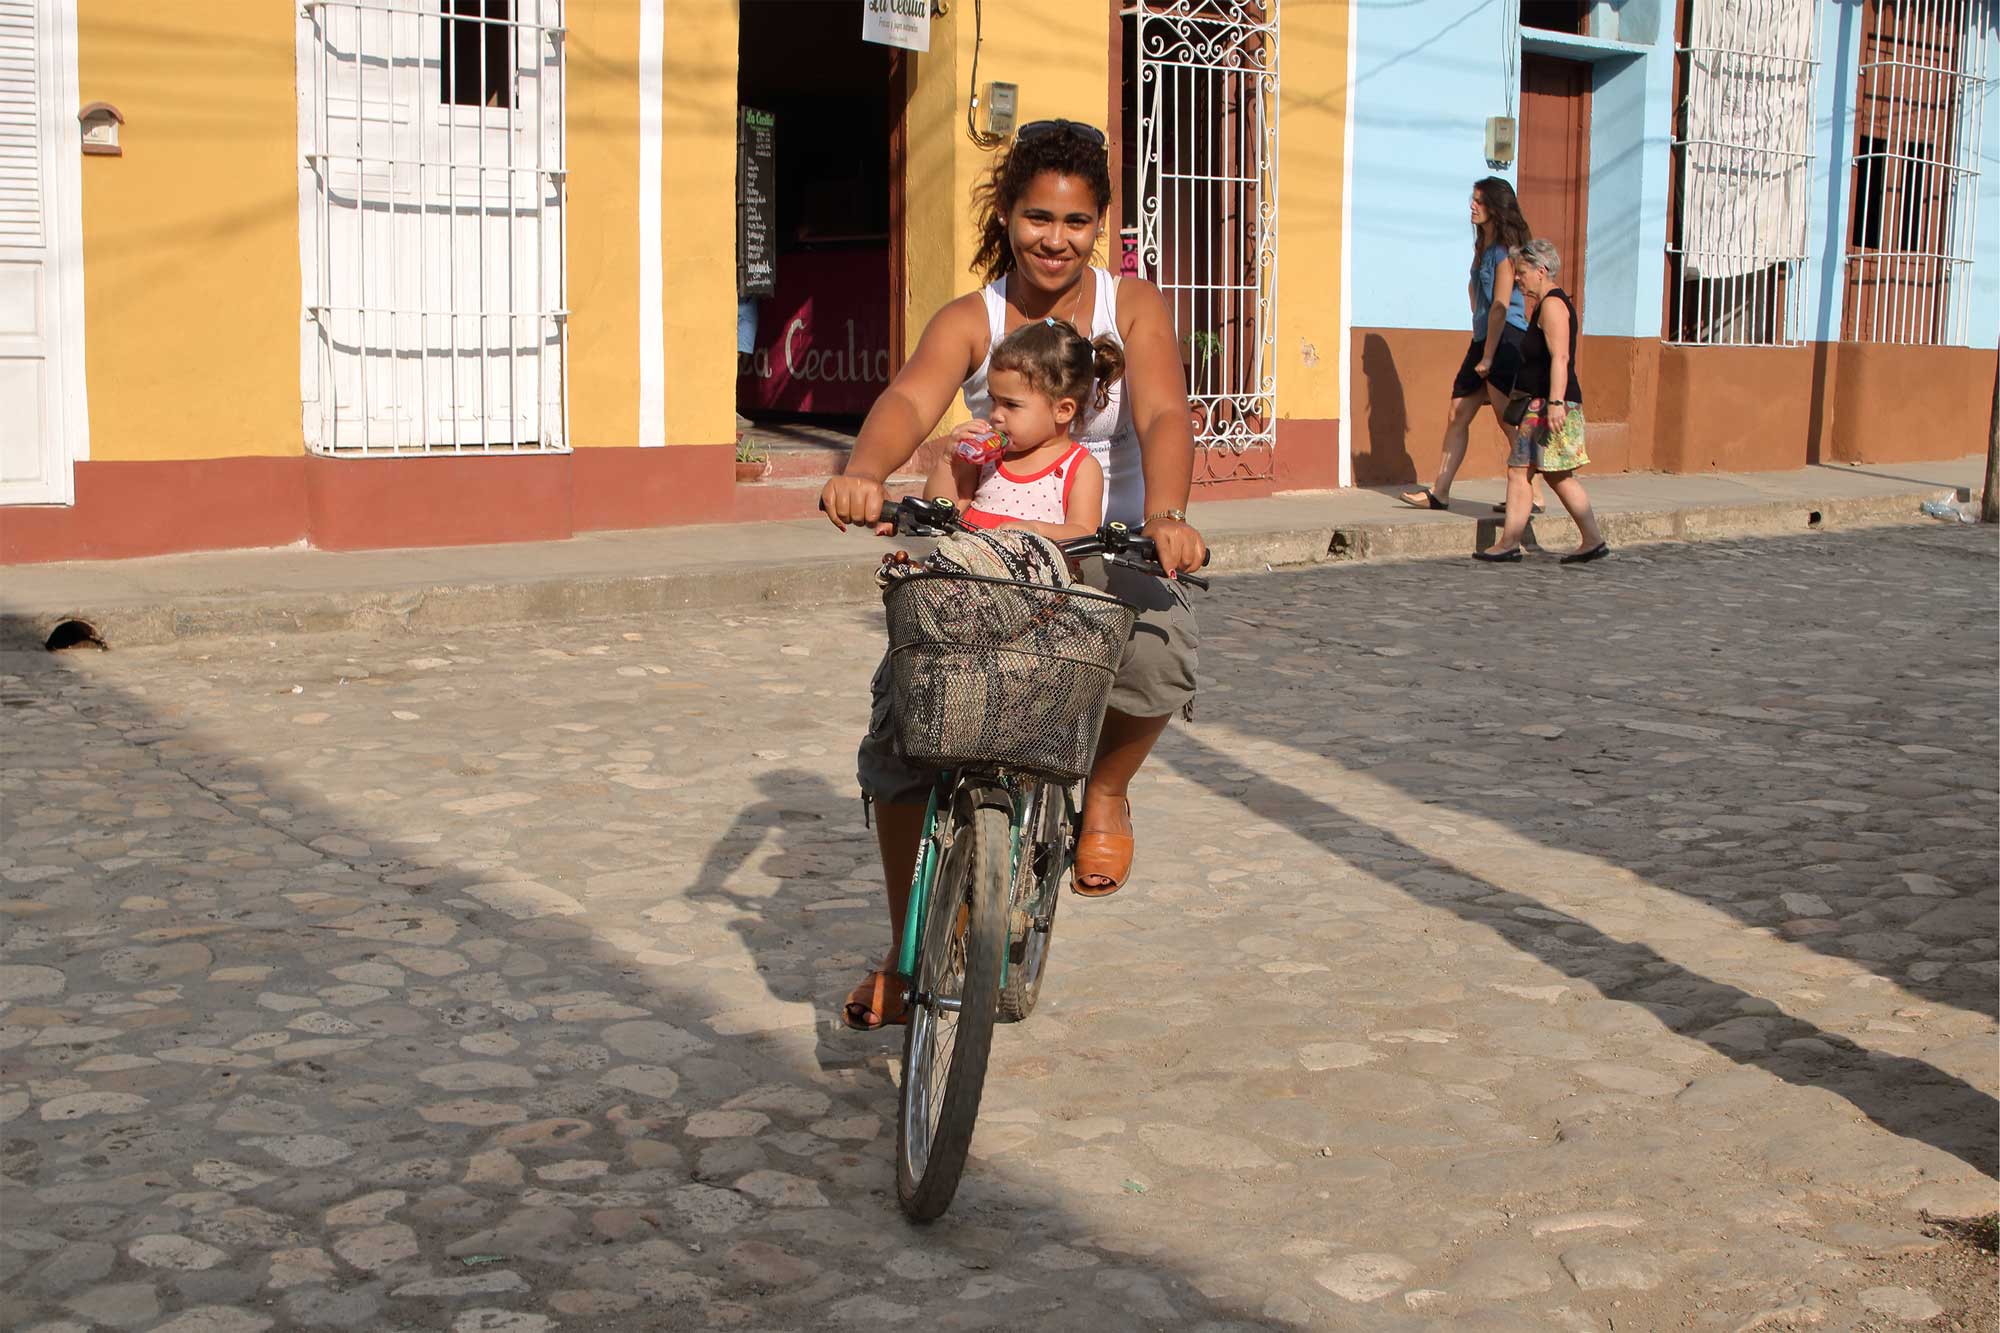 Street photogaphy in Trinidad de Cuba. Photos by Julio Munoz